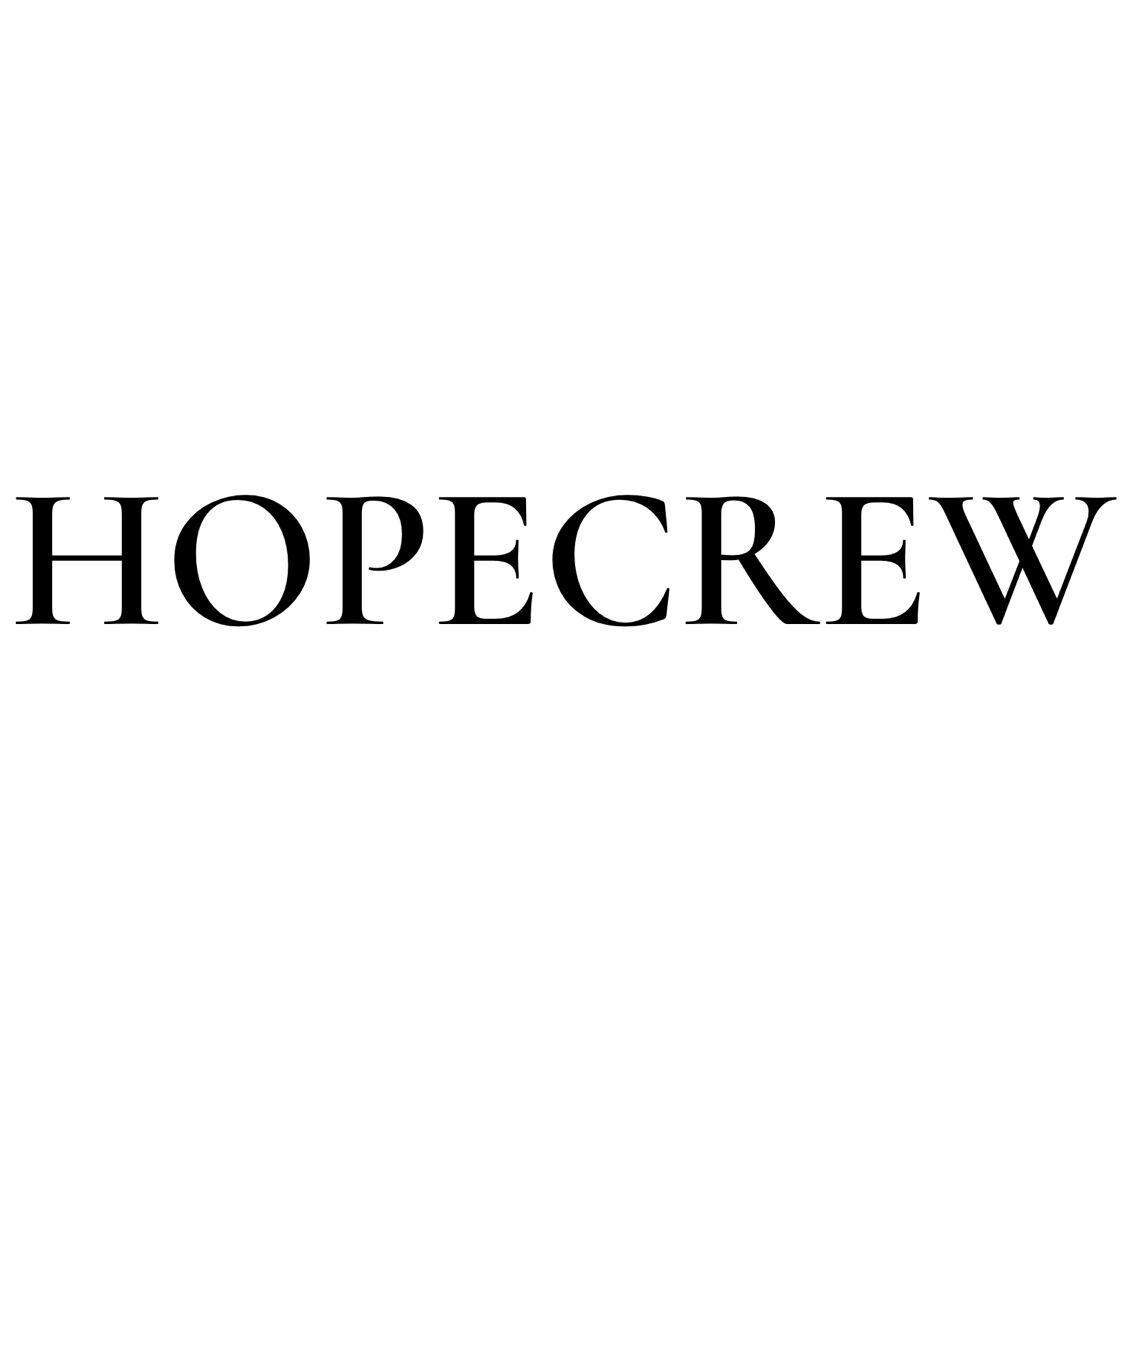 HOPECREW